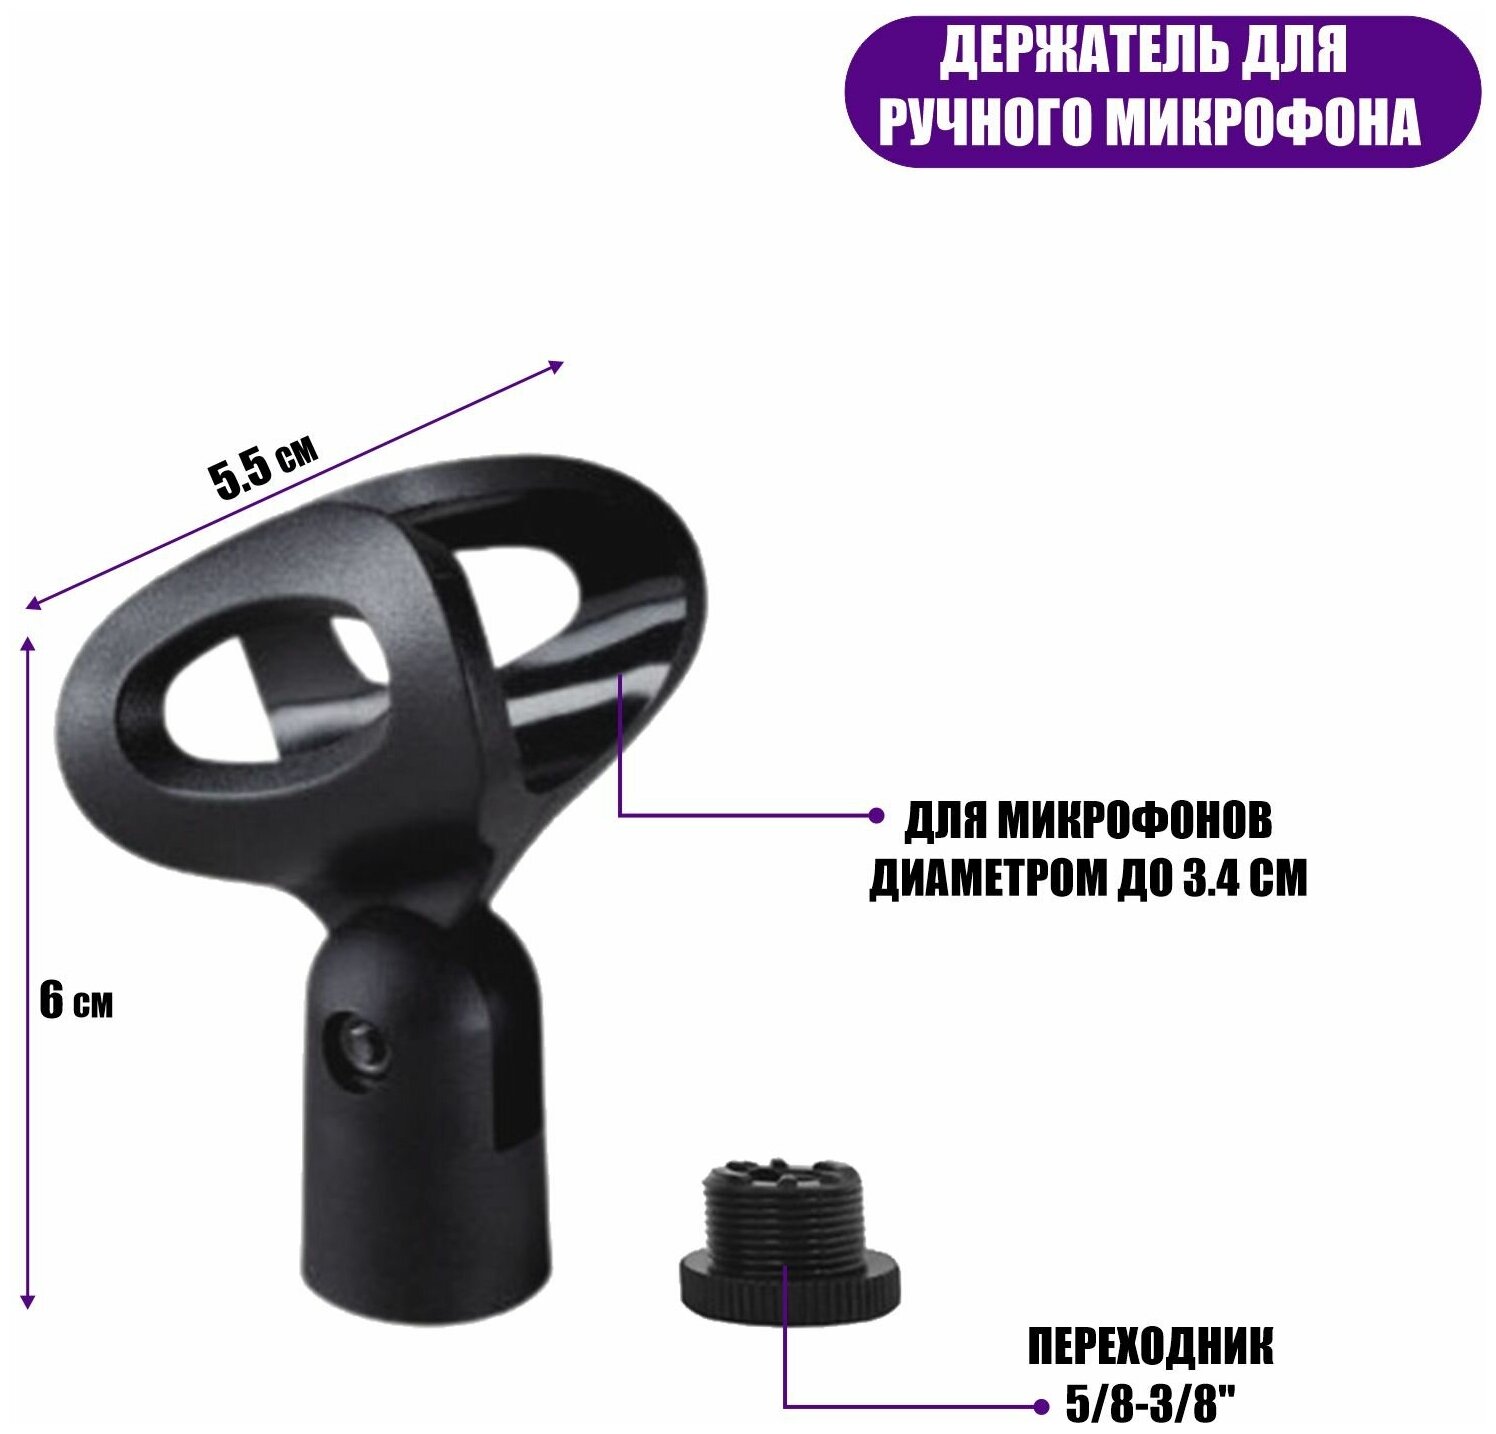 Напольная стойка JBH-G1T3 для микрофона с универсальным держателем для телефона шириной до 85